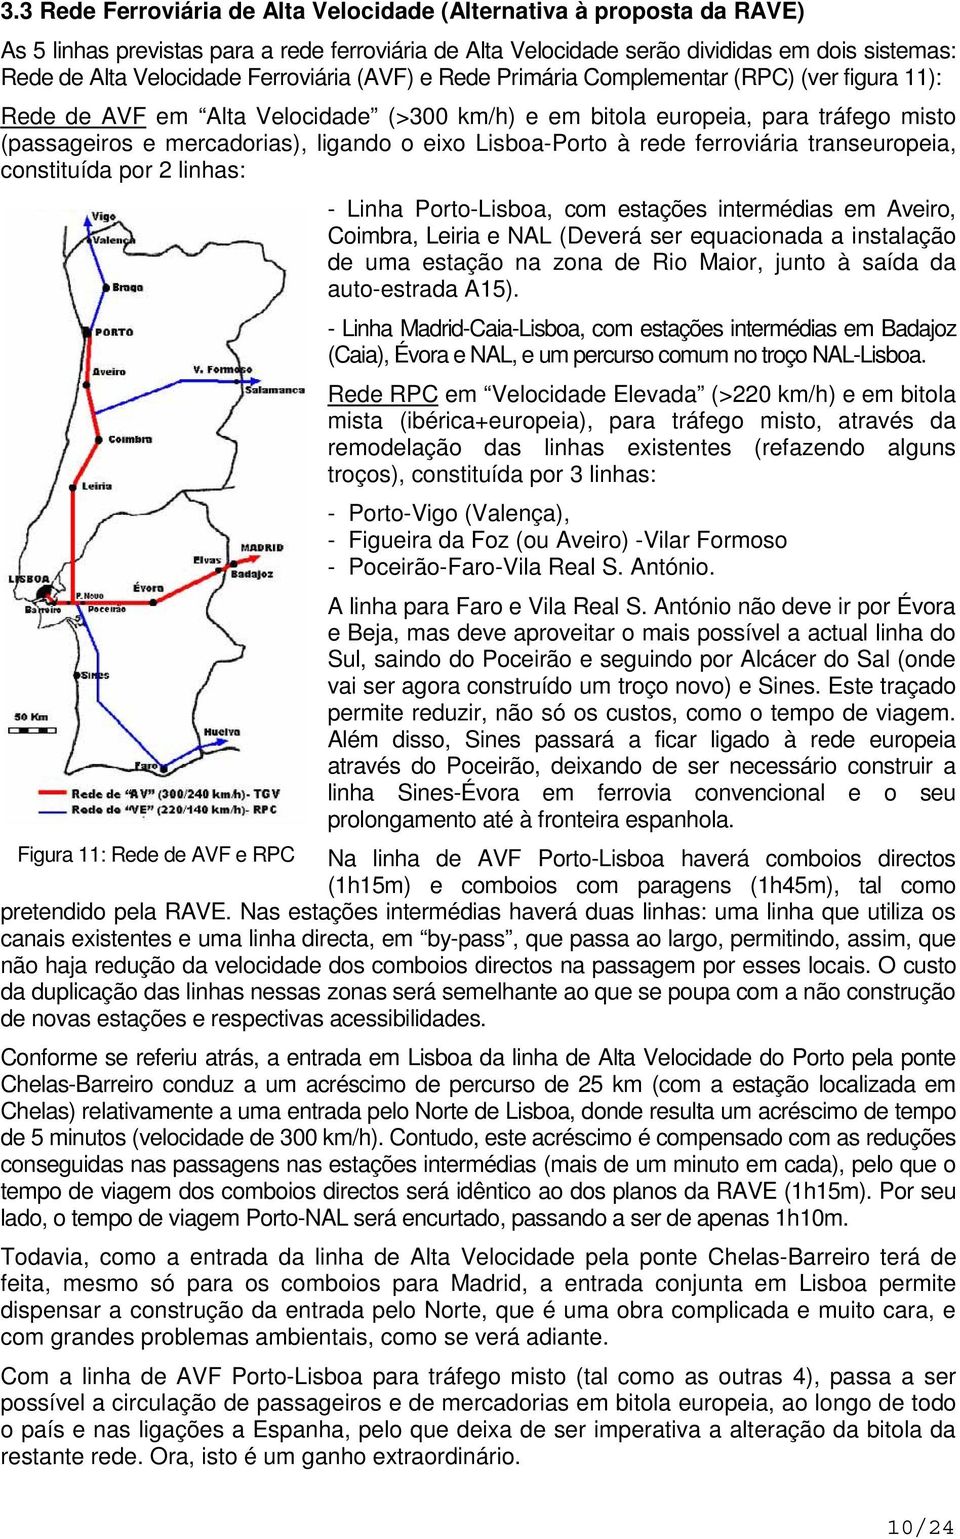 Lisboa-Porto à rede ferroviária transeuropeia, constituída por 2 linhas: - Linha Porto-Lisboa, com estações intermédias em Aveiro, Coimbra, Leiria e NAL (Deverá ser equacionada a instalação de uma